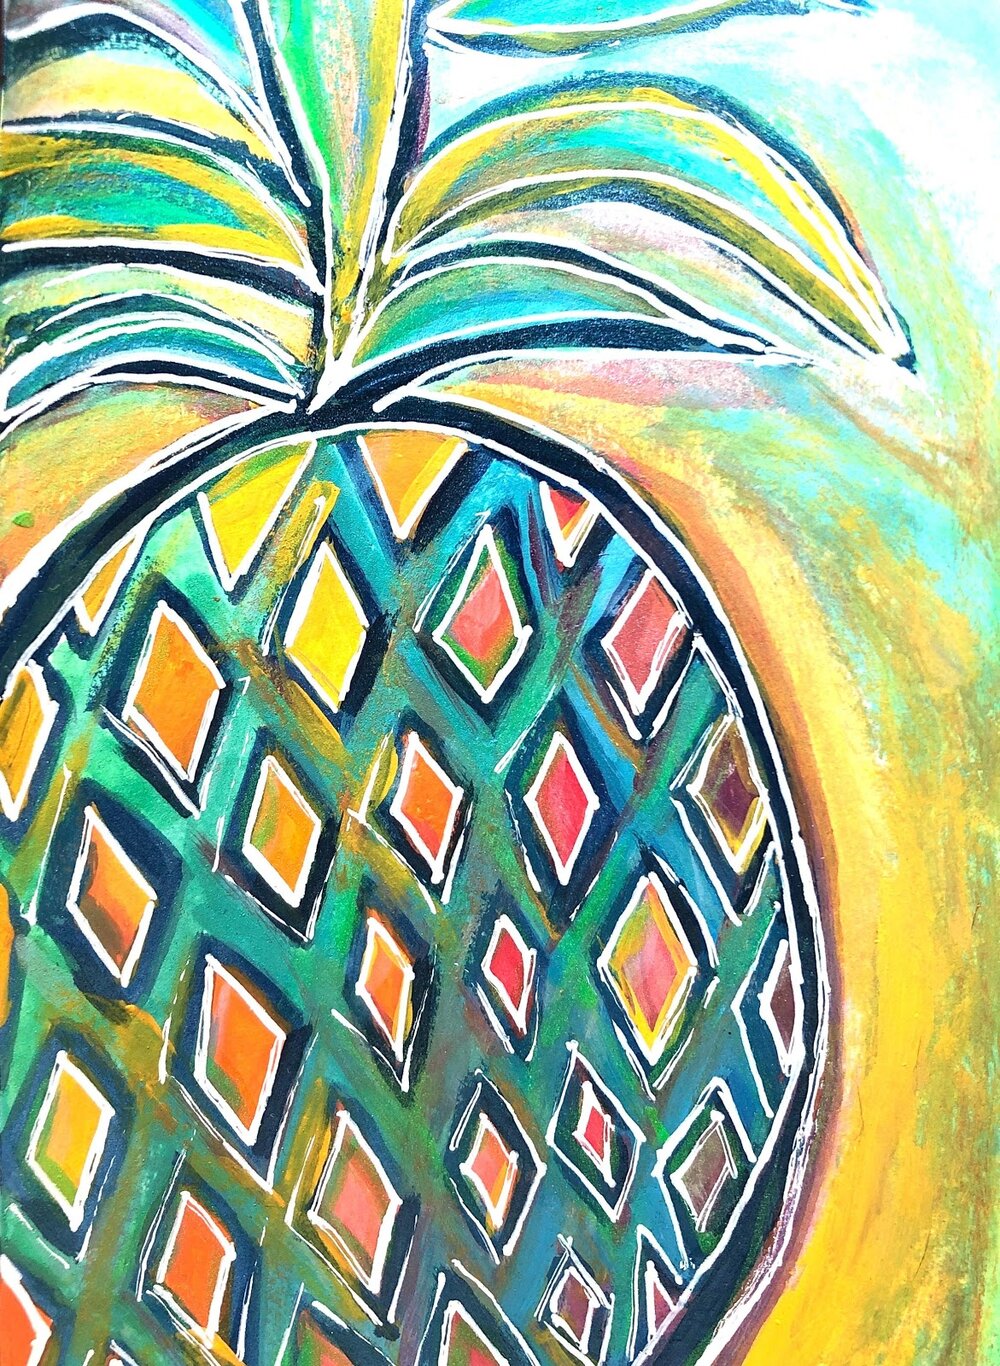 Pinte um abacaxi tropical e divertido na tonalidade que você quiser.